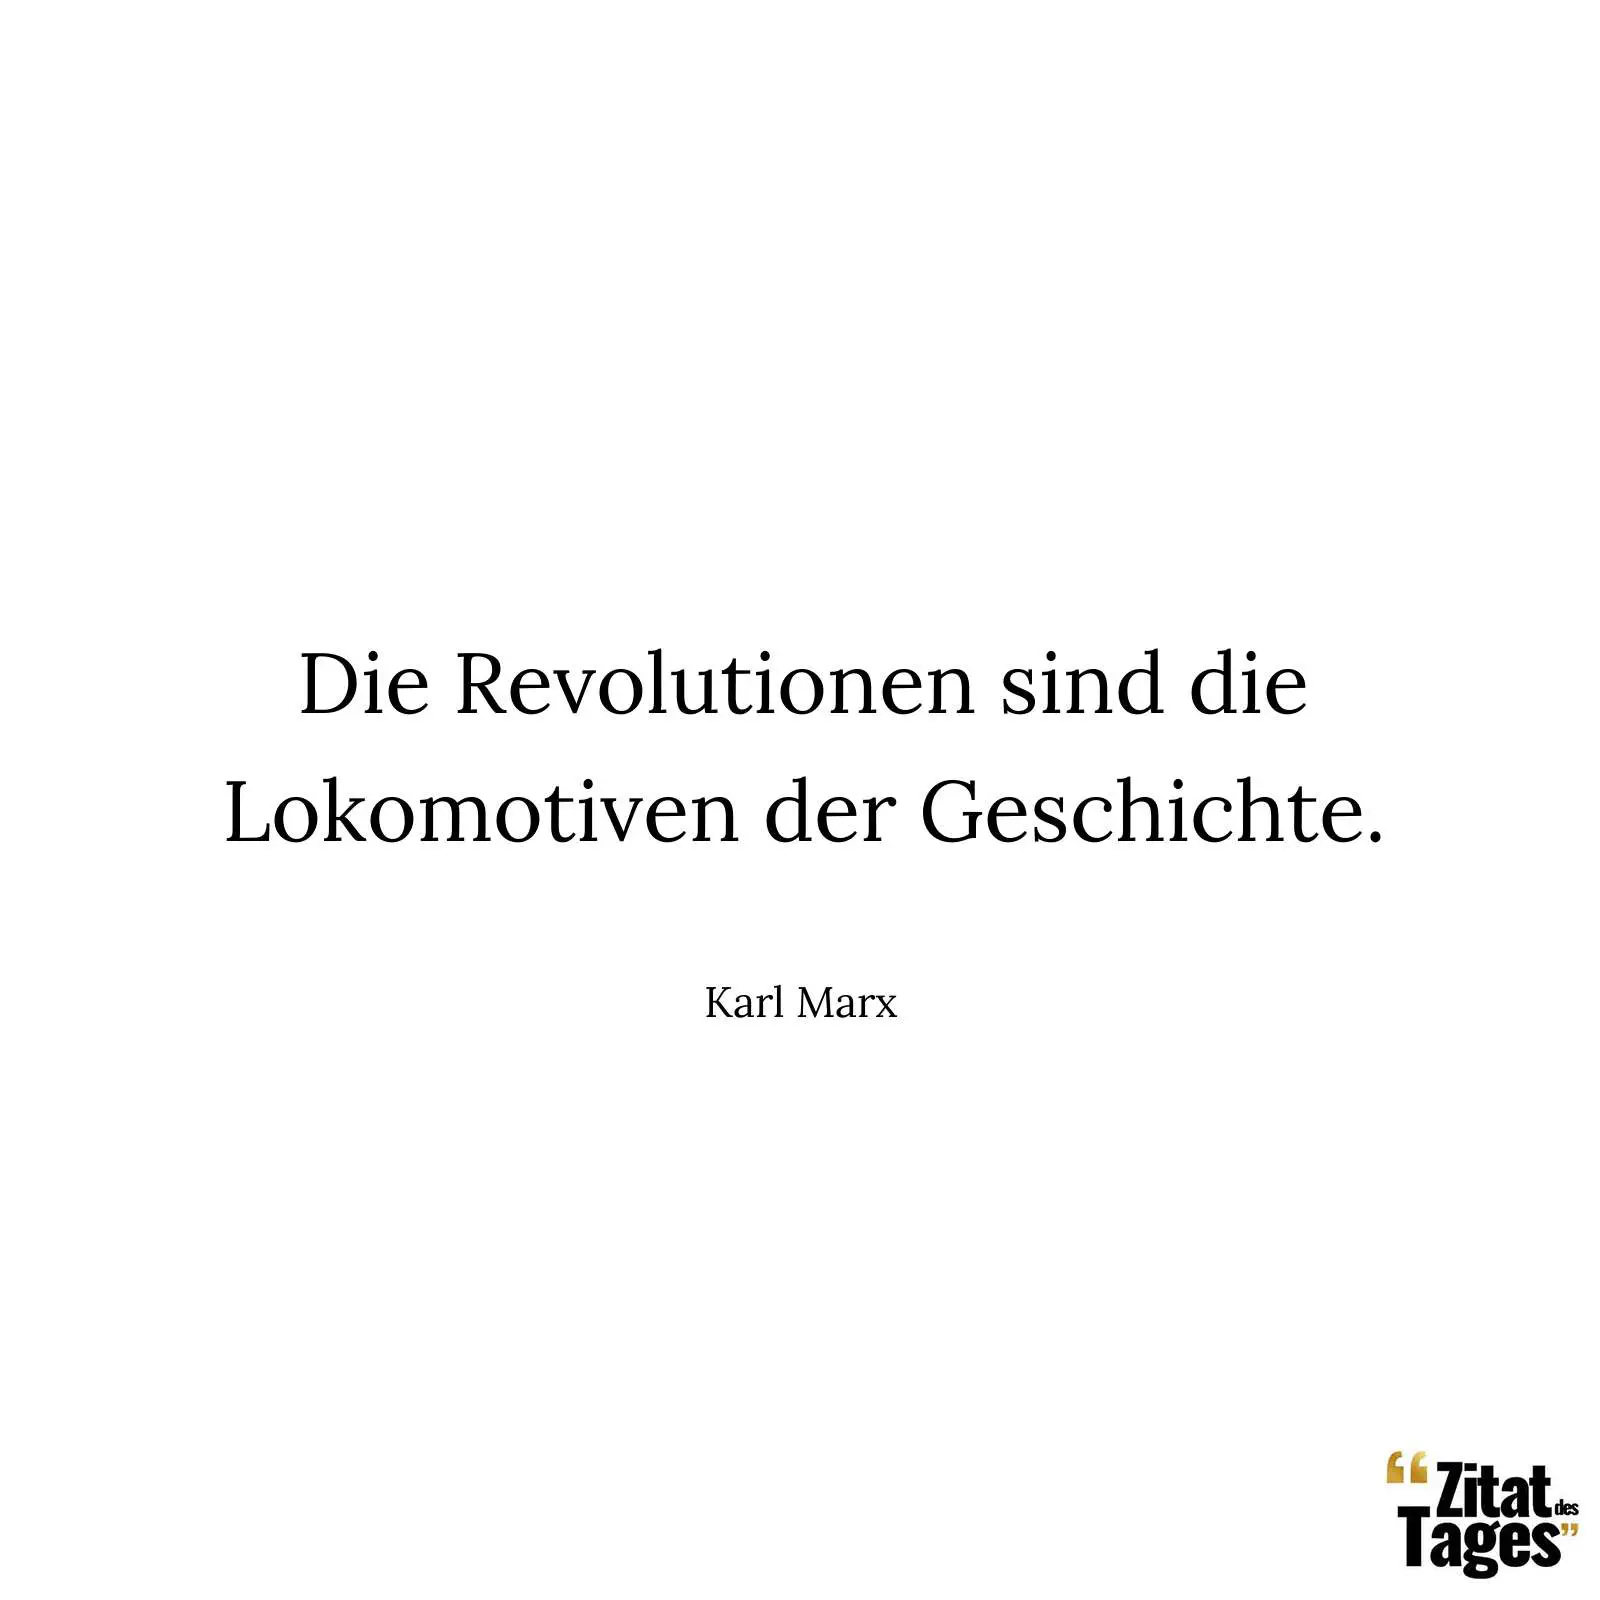 Die Revolutionen sind die Lokomotiven der Geschichte. - Karl Marx